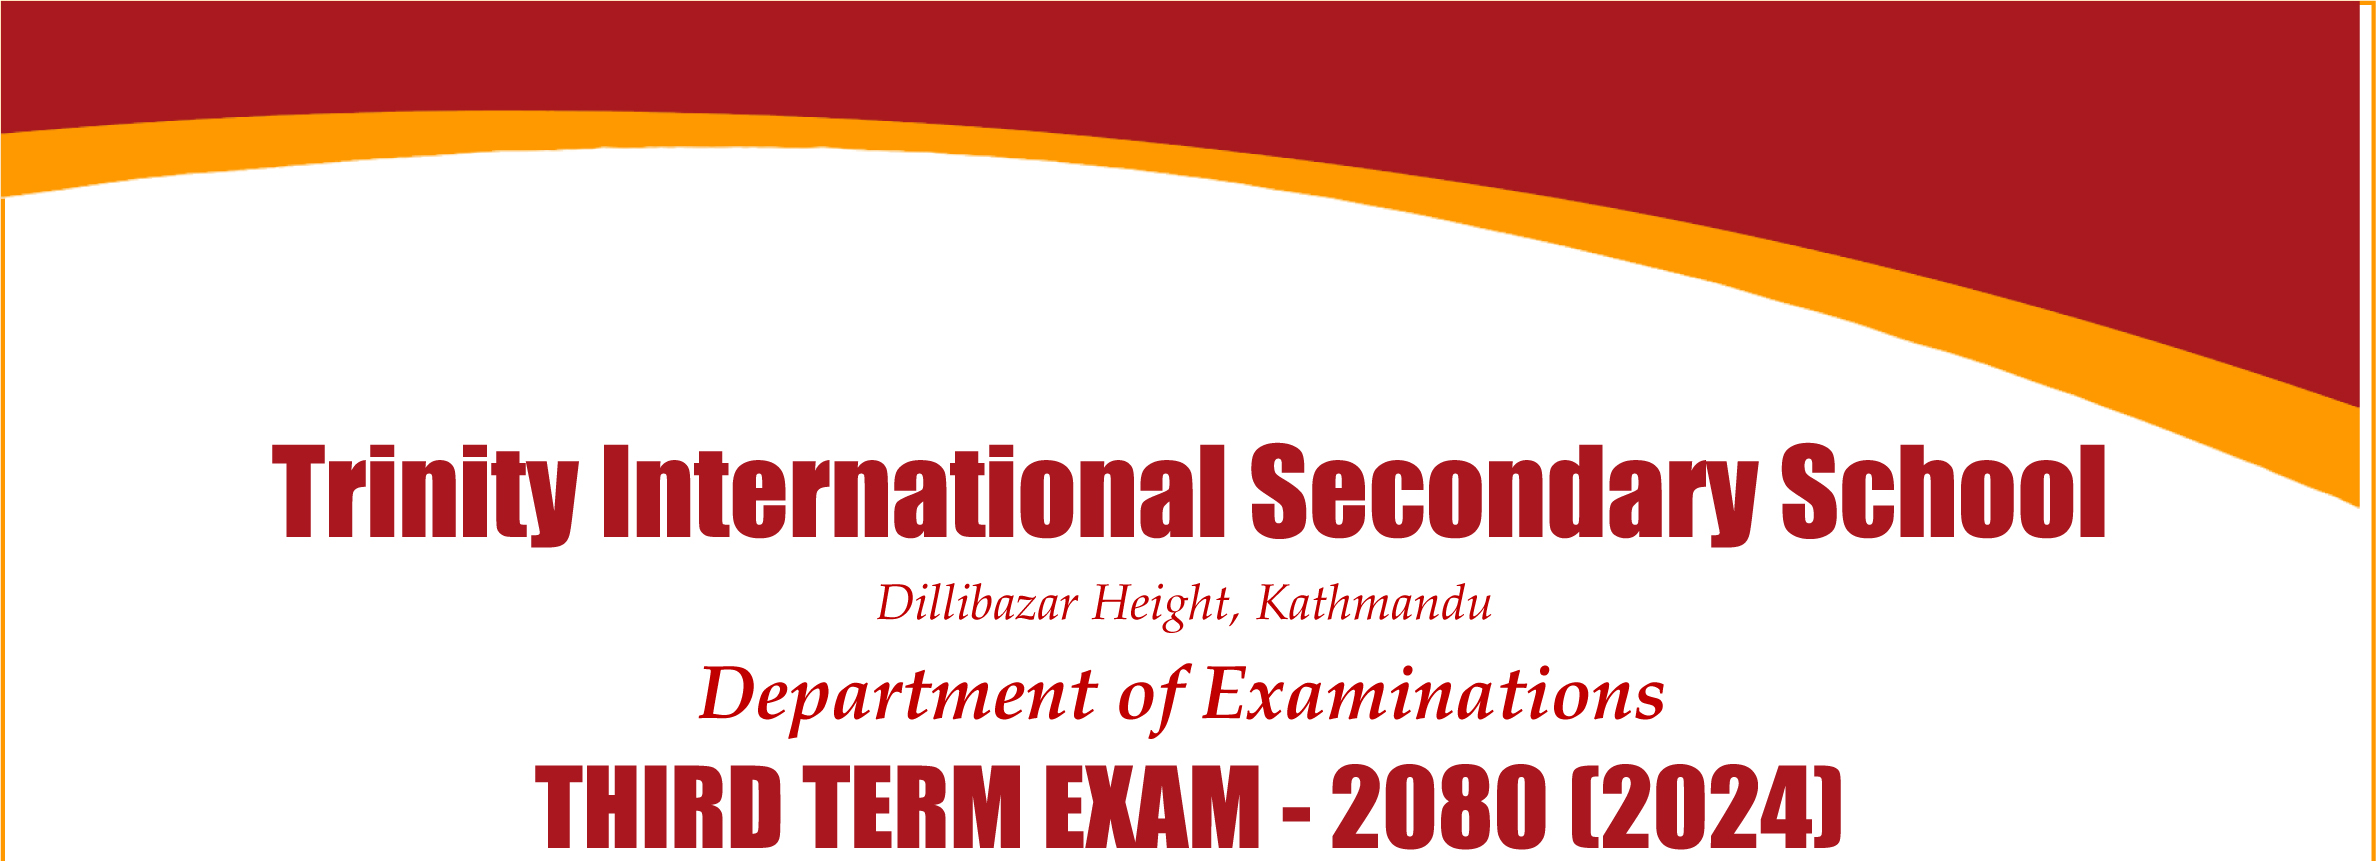 Routine Third Term Examination 2080